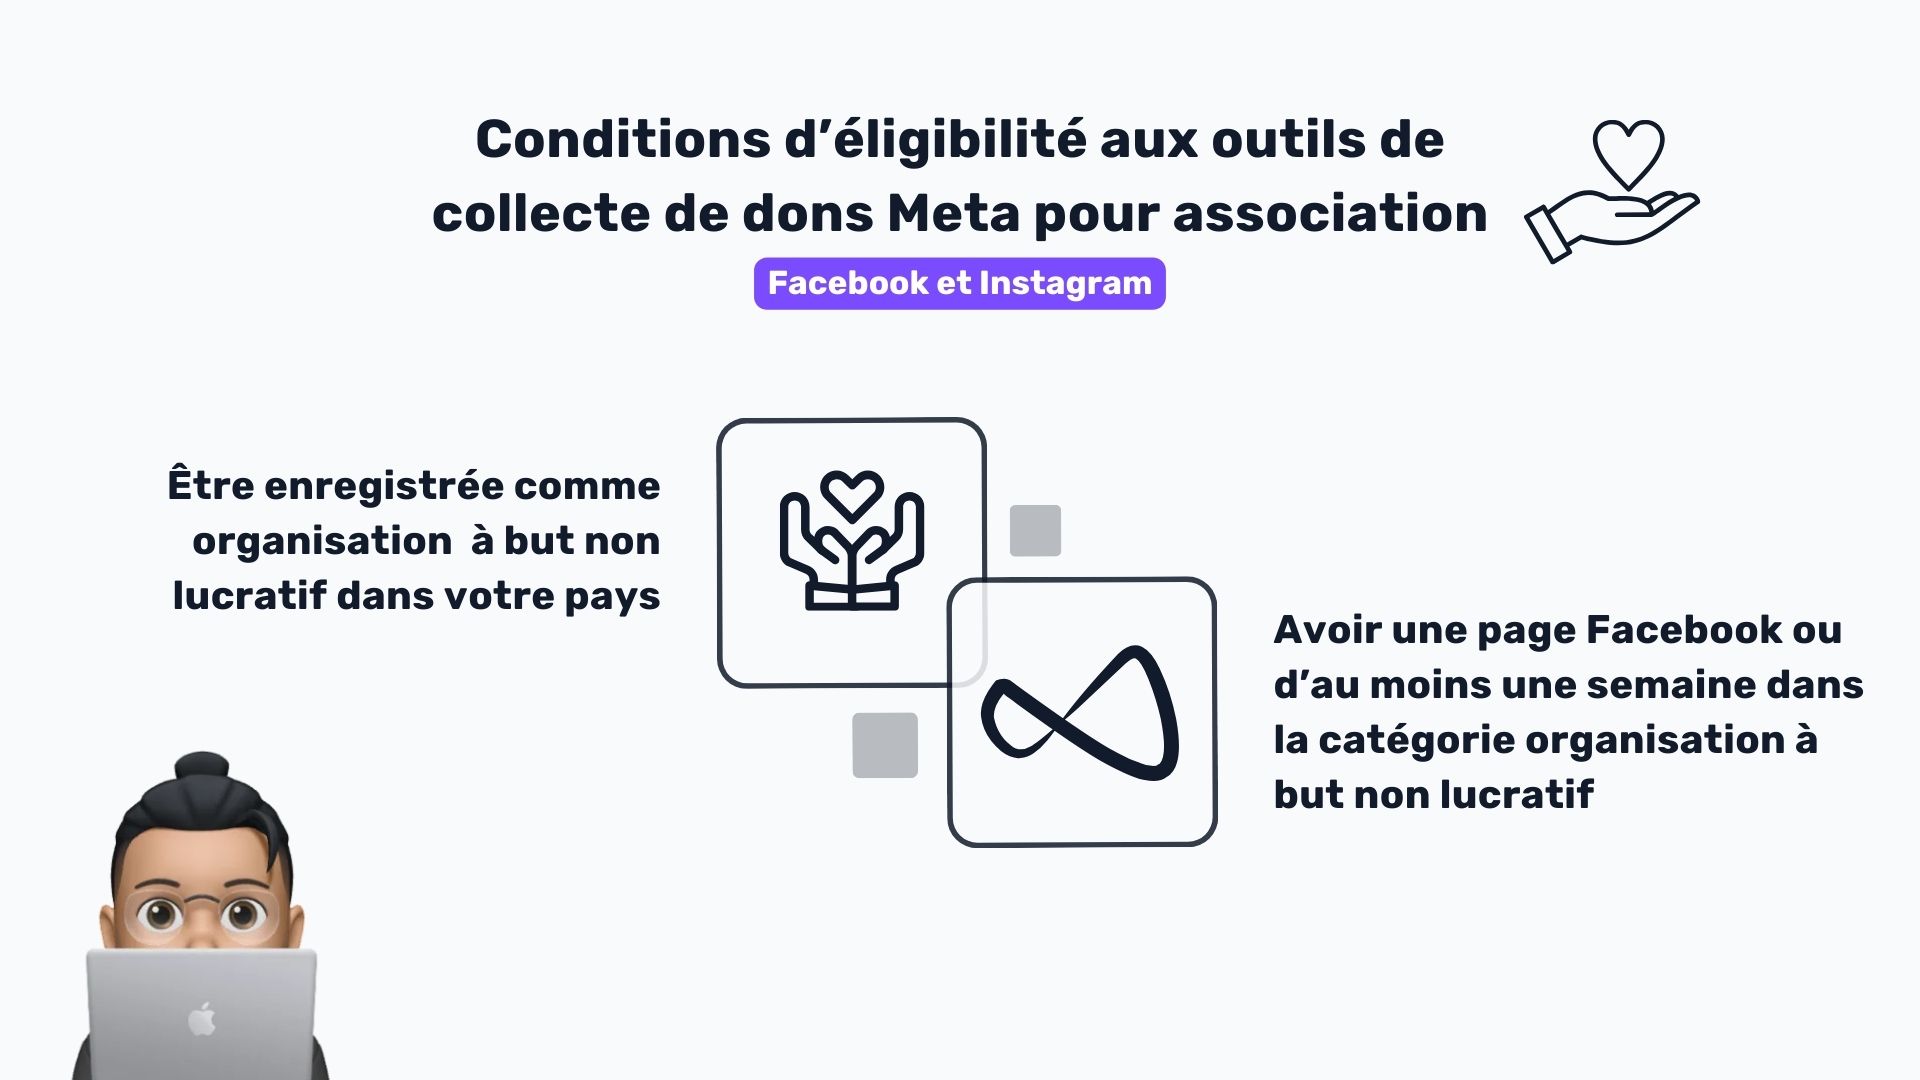 illustration avec les conditions d’éligibilité pour utiliser les outils de collecte de dons pour les associations de Meta